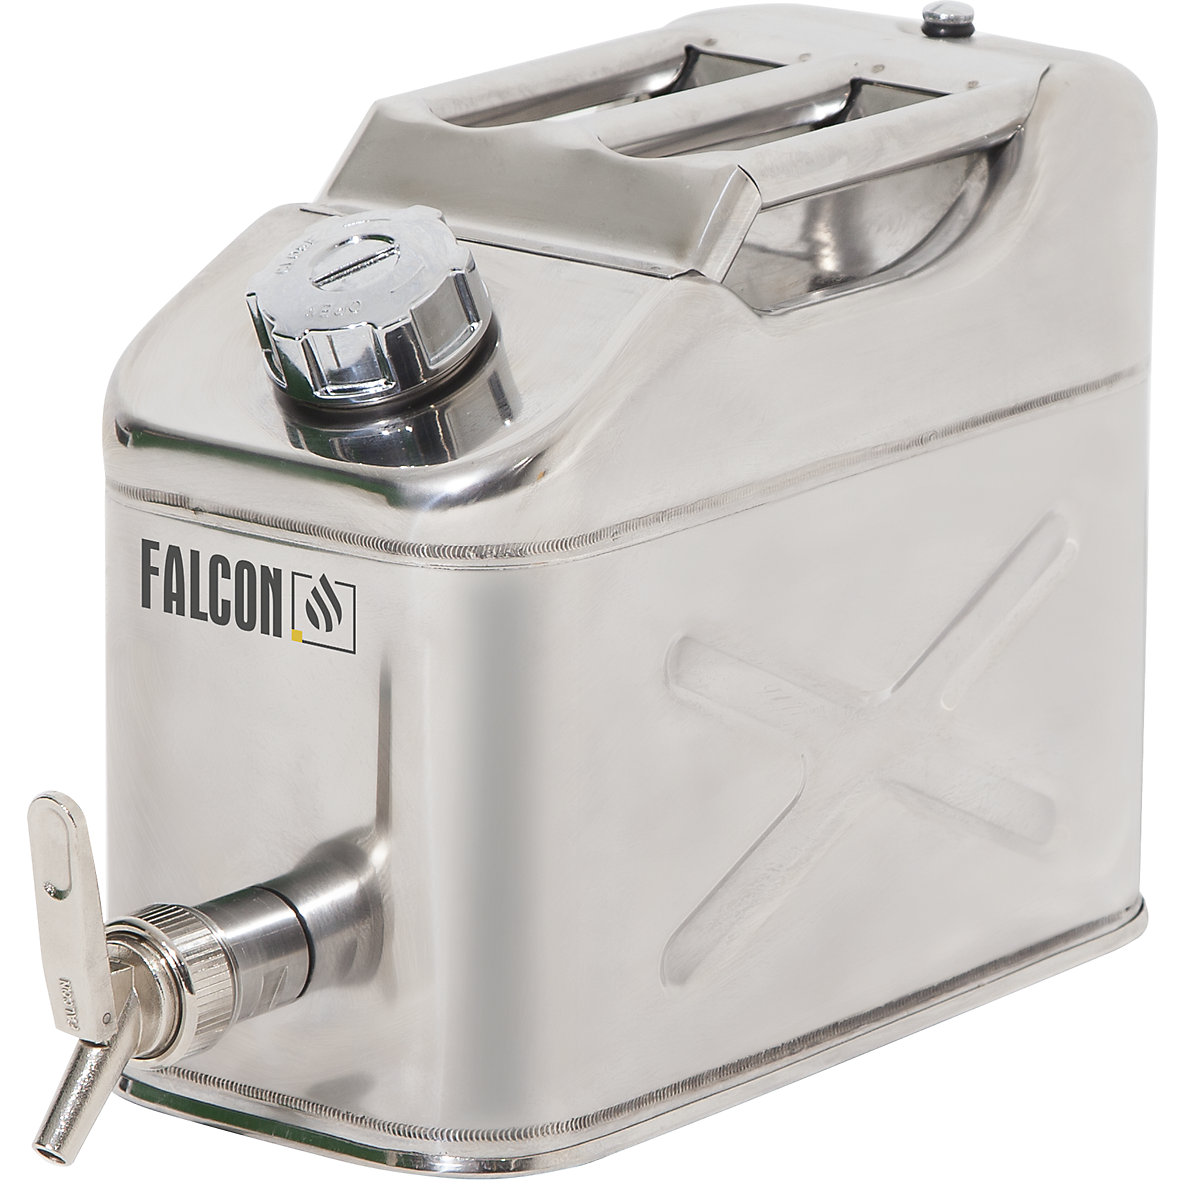 Bezpieczny kanister z precyzyjnym kurkiem dozującym - FALCON